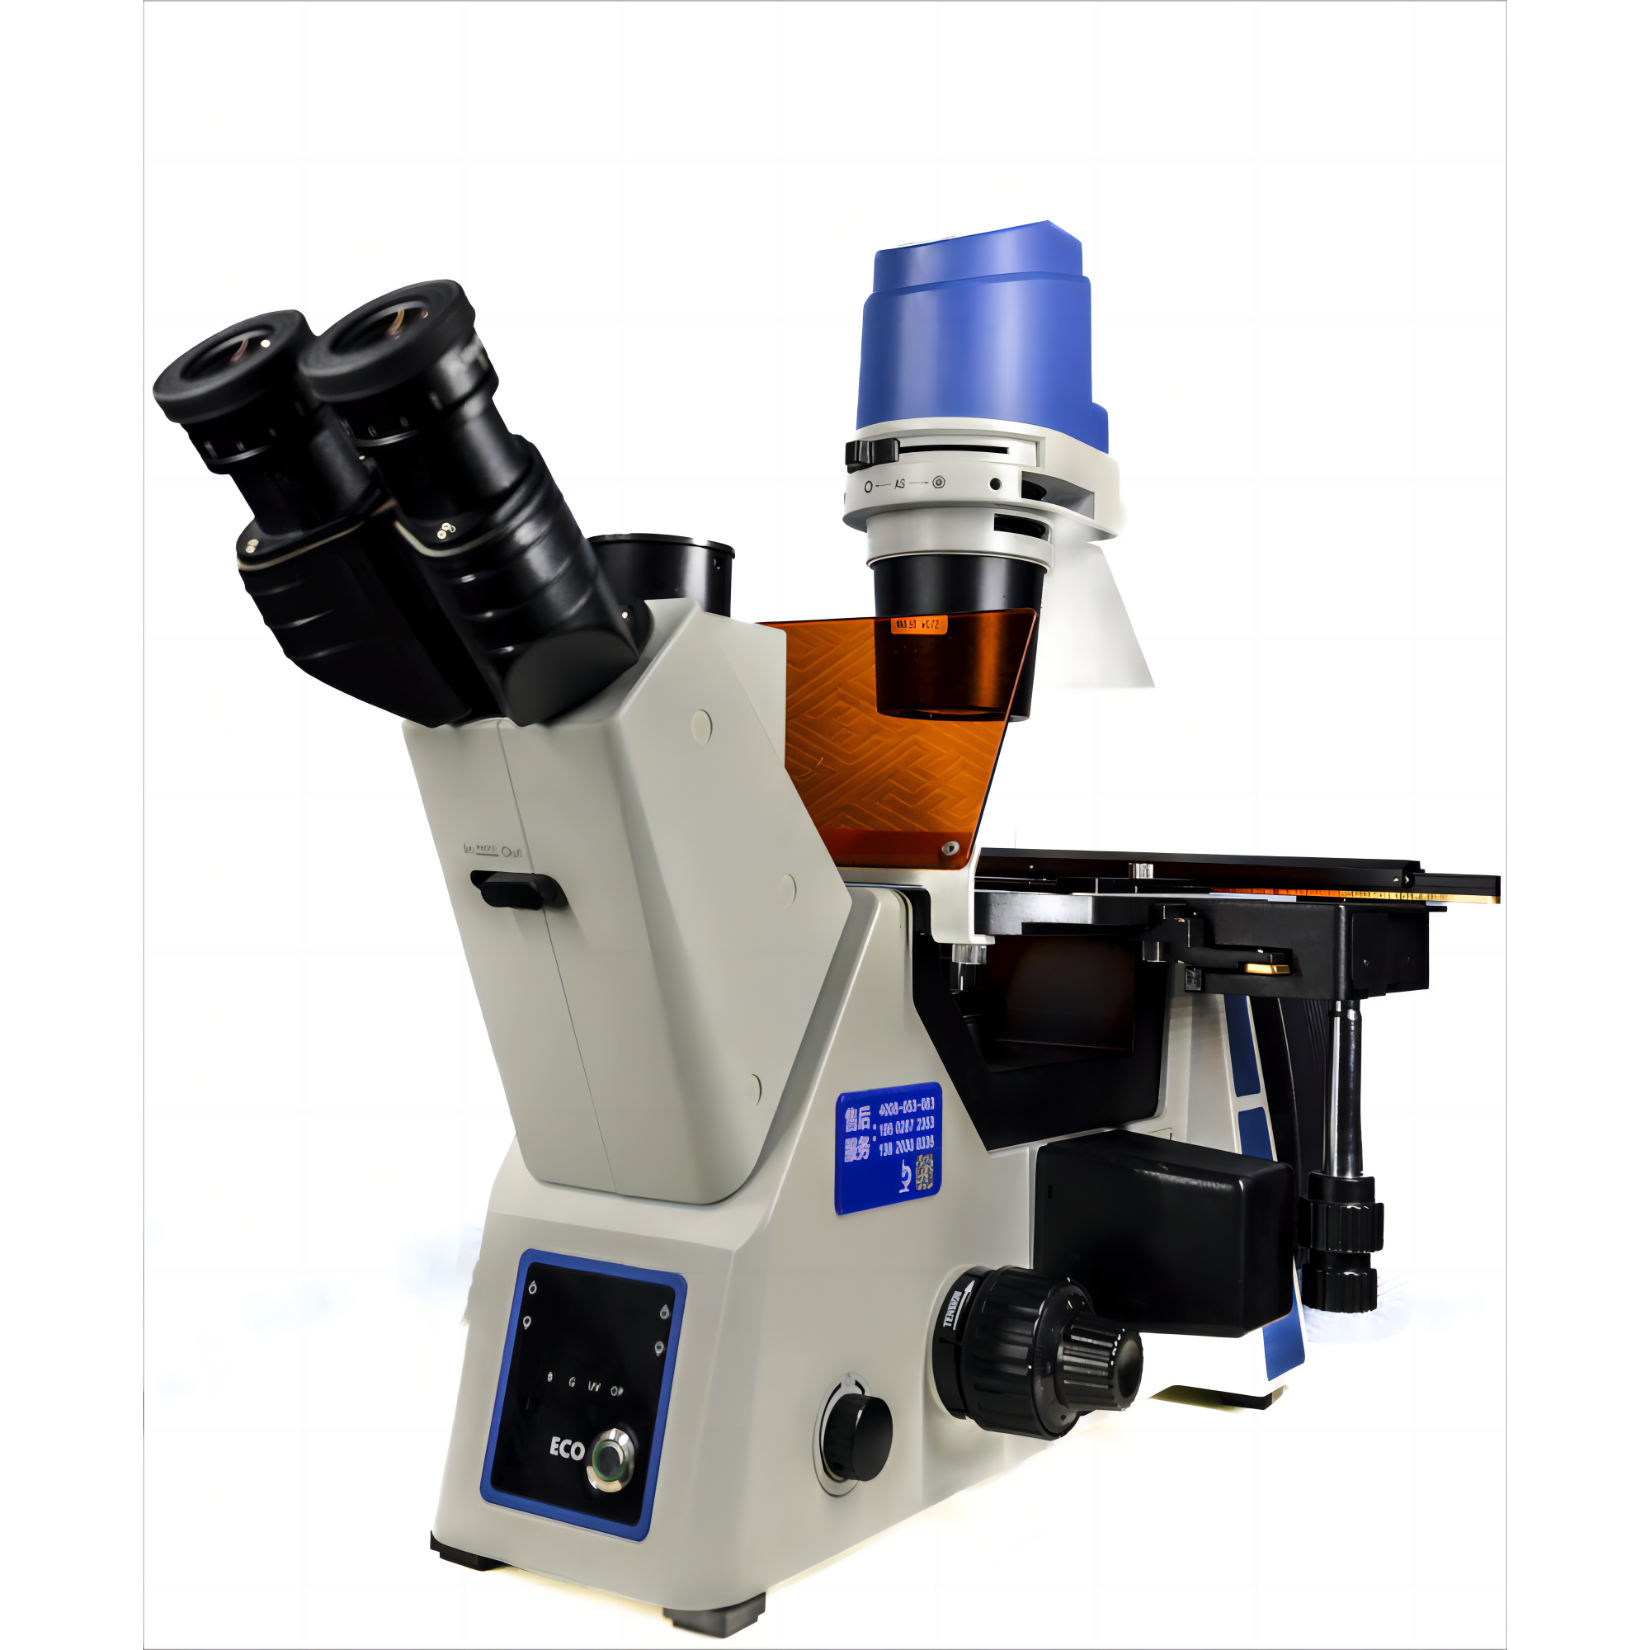 研究级倒置生物荧光显微镜